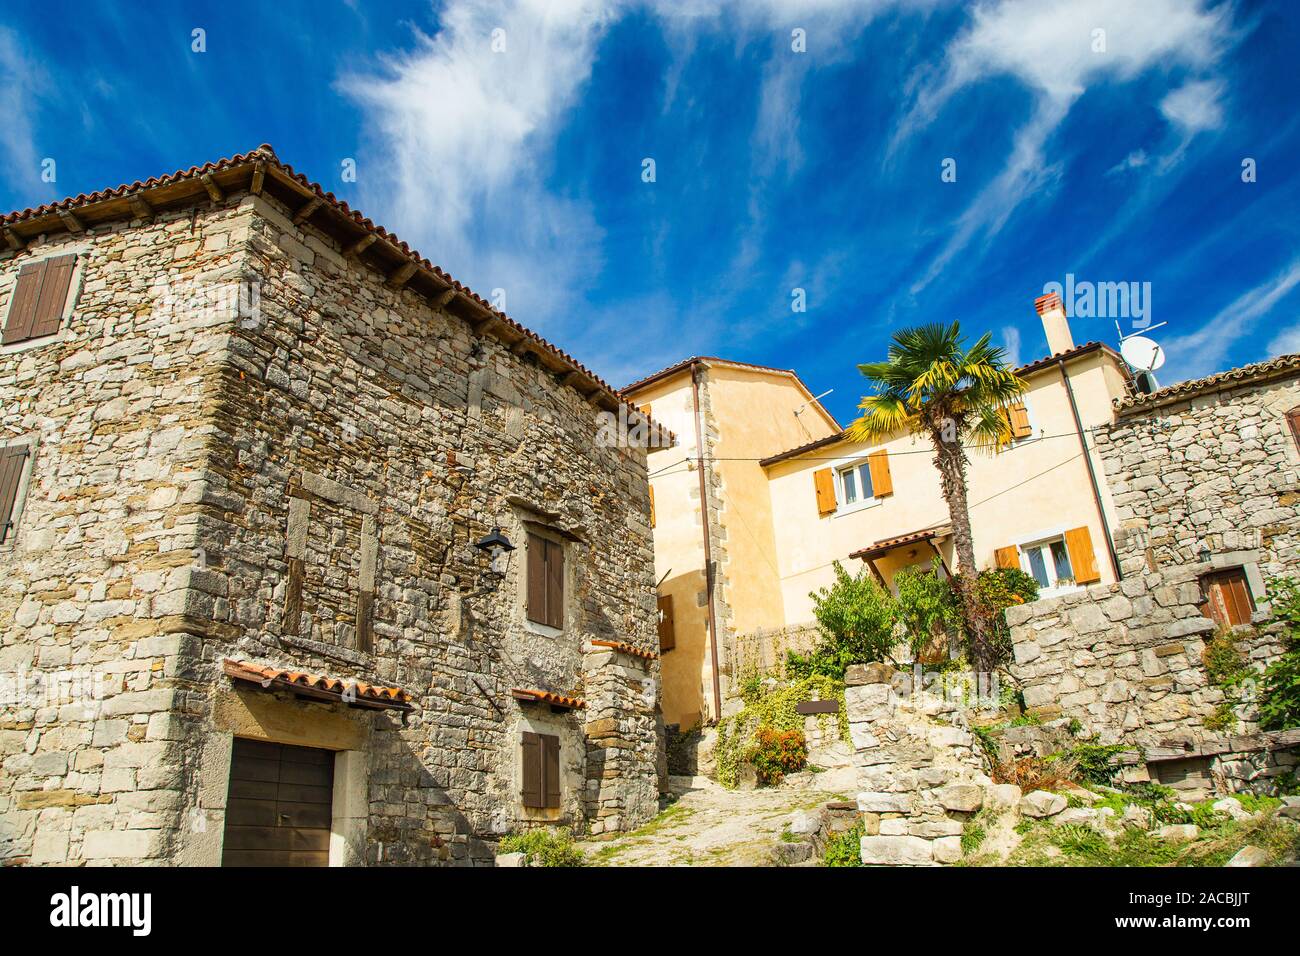 Vieille ville de Hum, belle architecture traditionnelle en Istrie, Croatie Banque D'Images